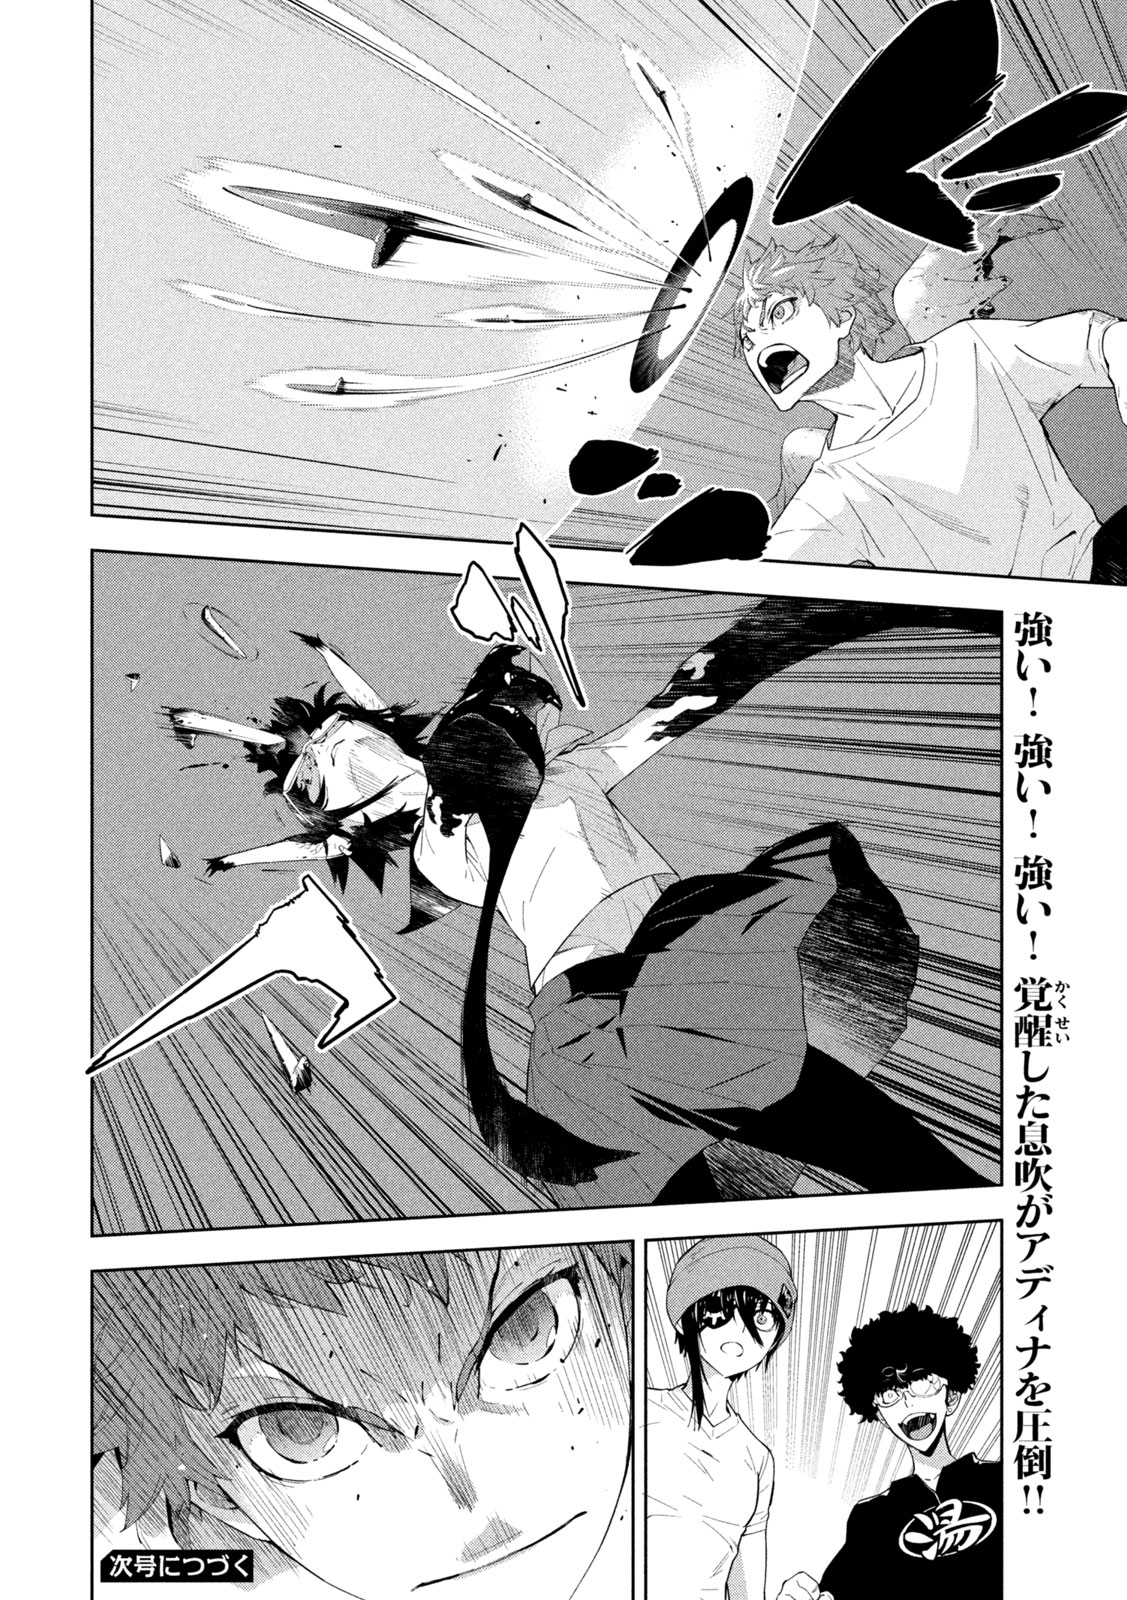 Seirei Tsukai – Chito no Jinshi - Chapter 29 - Page 12